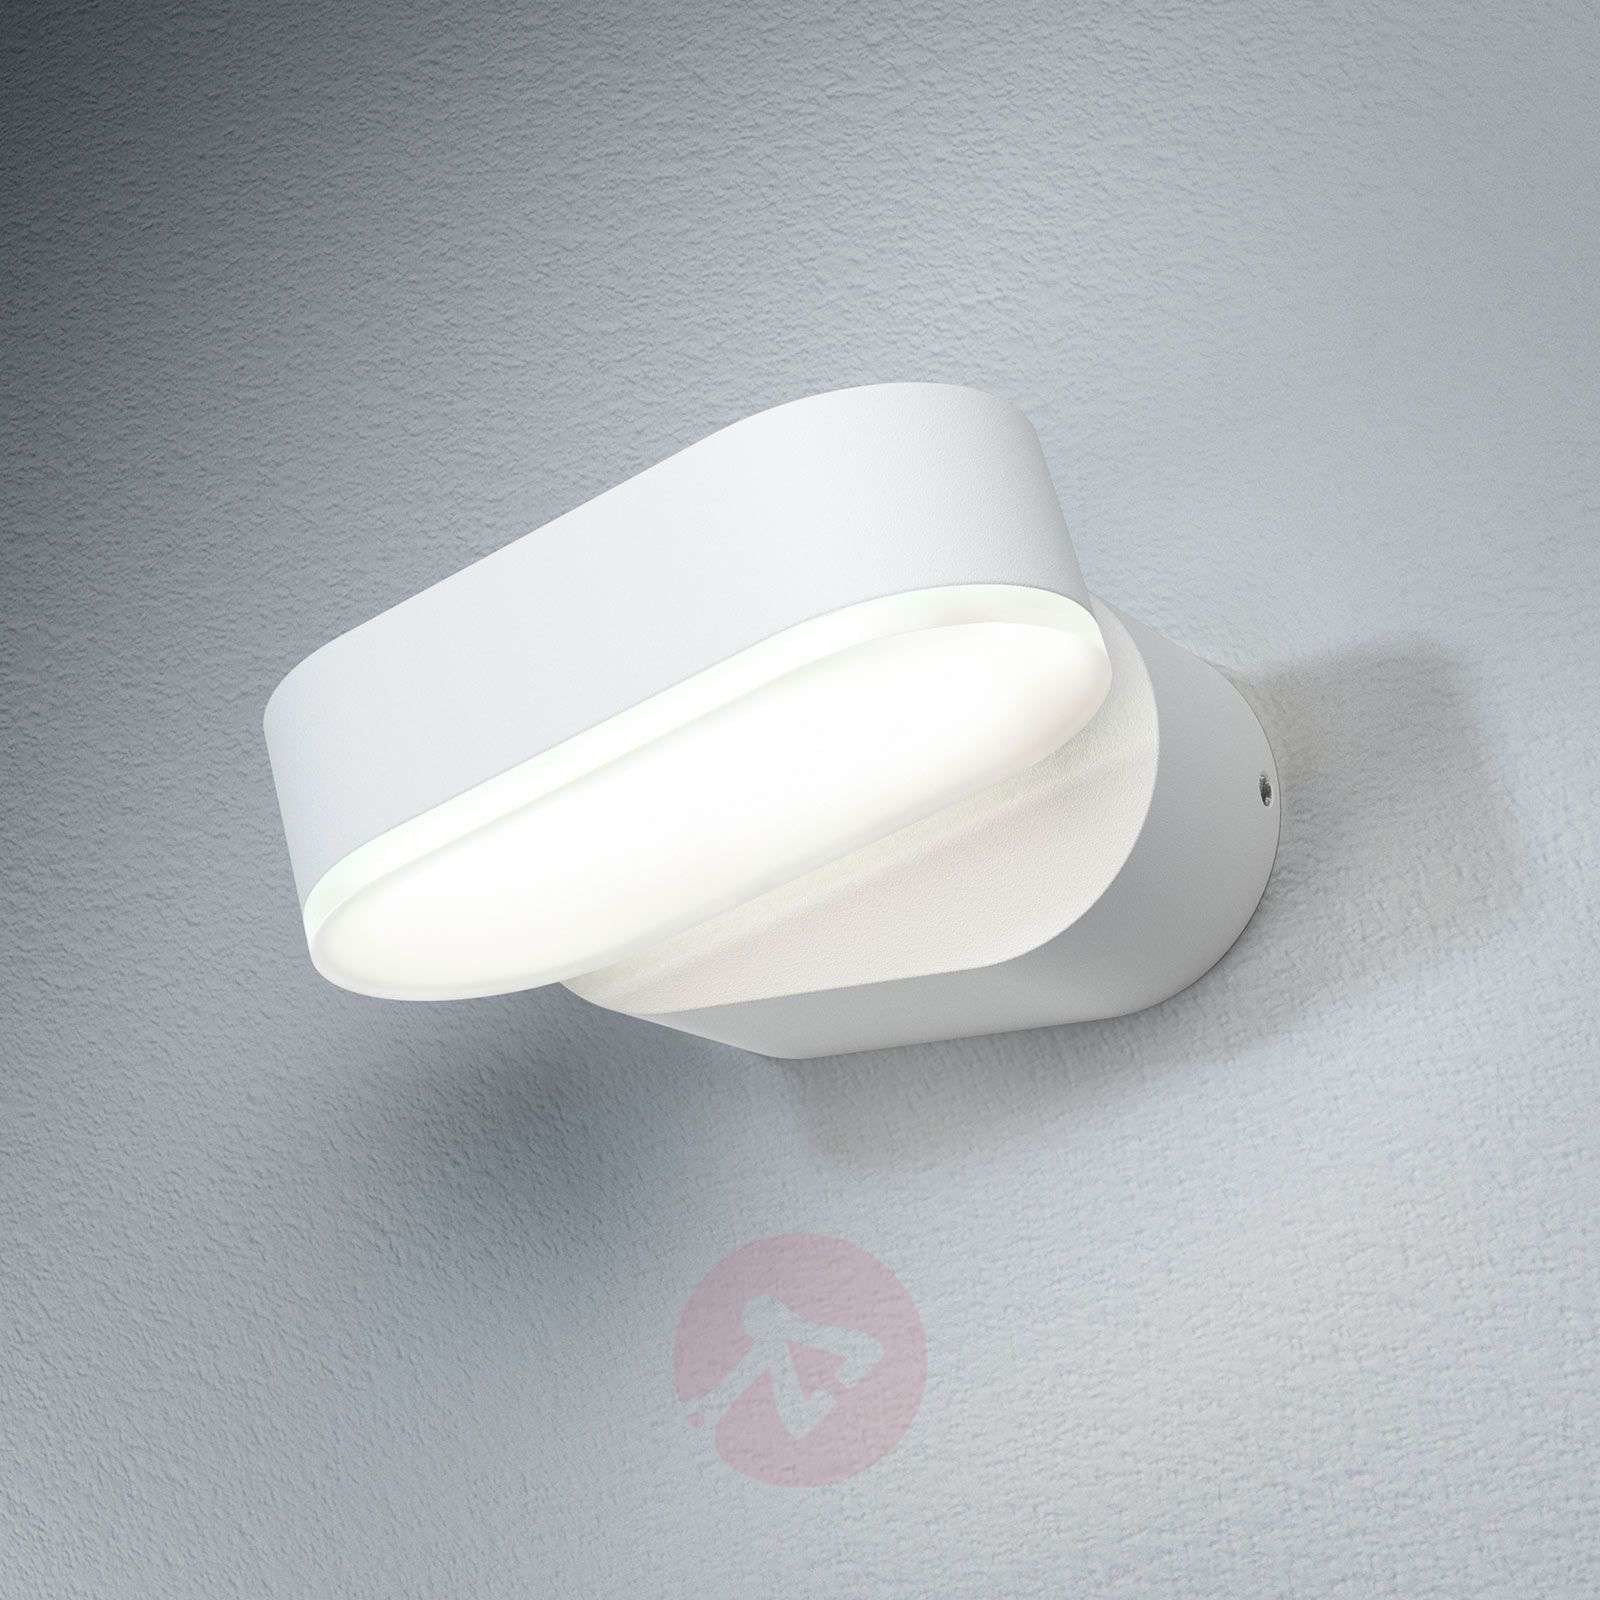 LEDVANCE Endura Style Mini Spot I LED biały